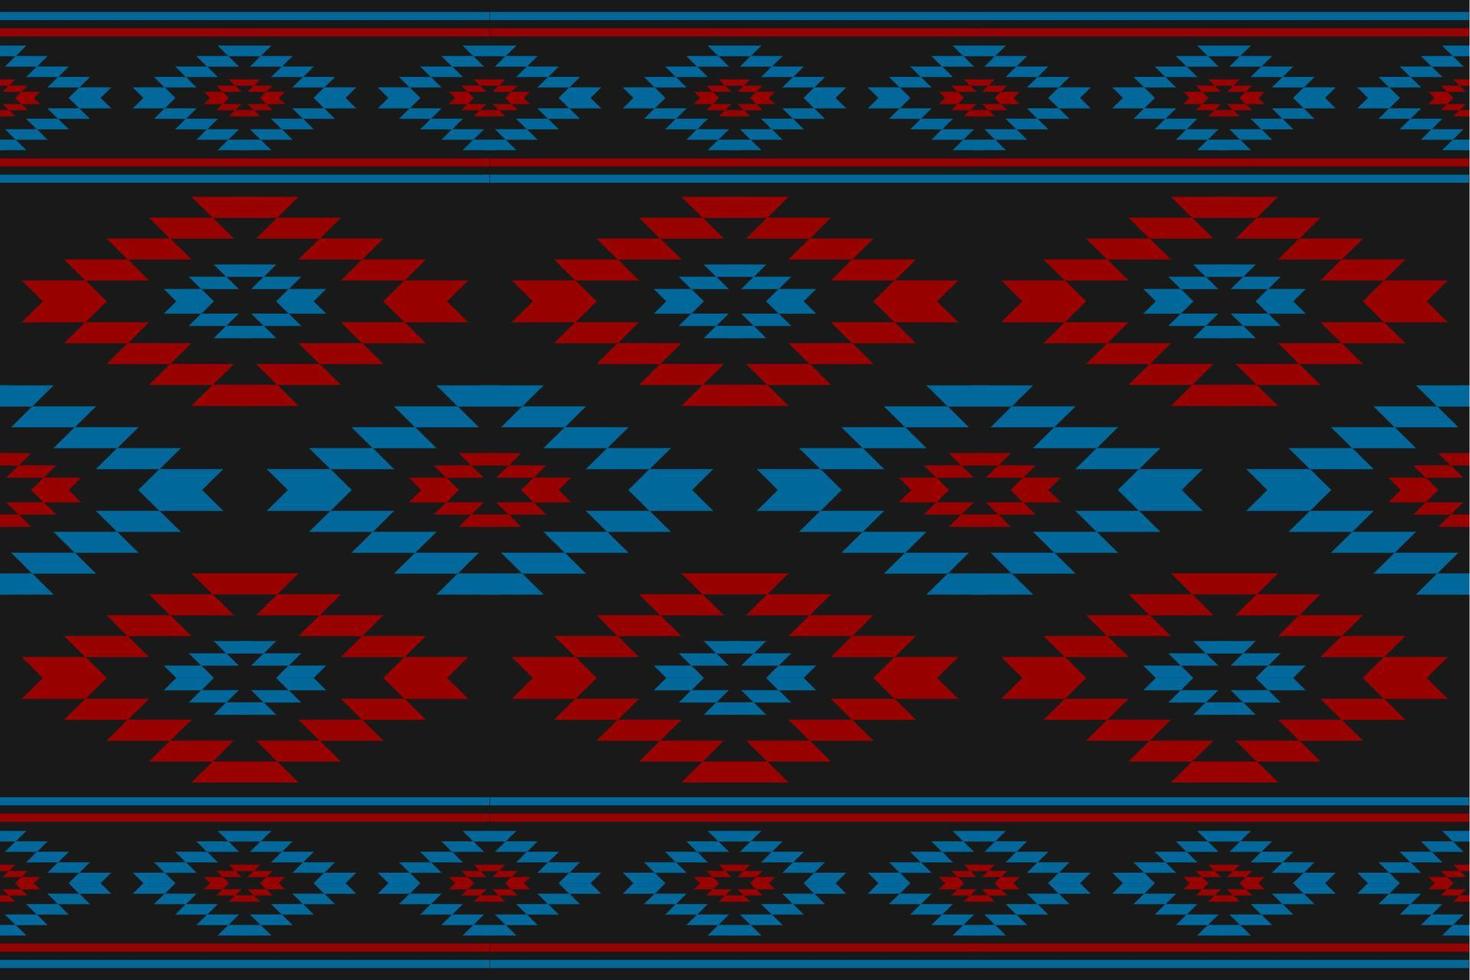 style de motif tribal en tissu. motif géométrique sans couture ethnique traditionnel. impression d'ornement ethnique aztèque. vecteur